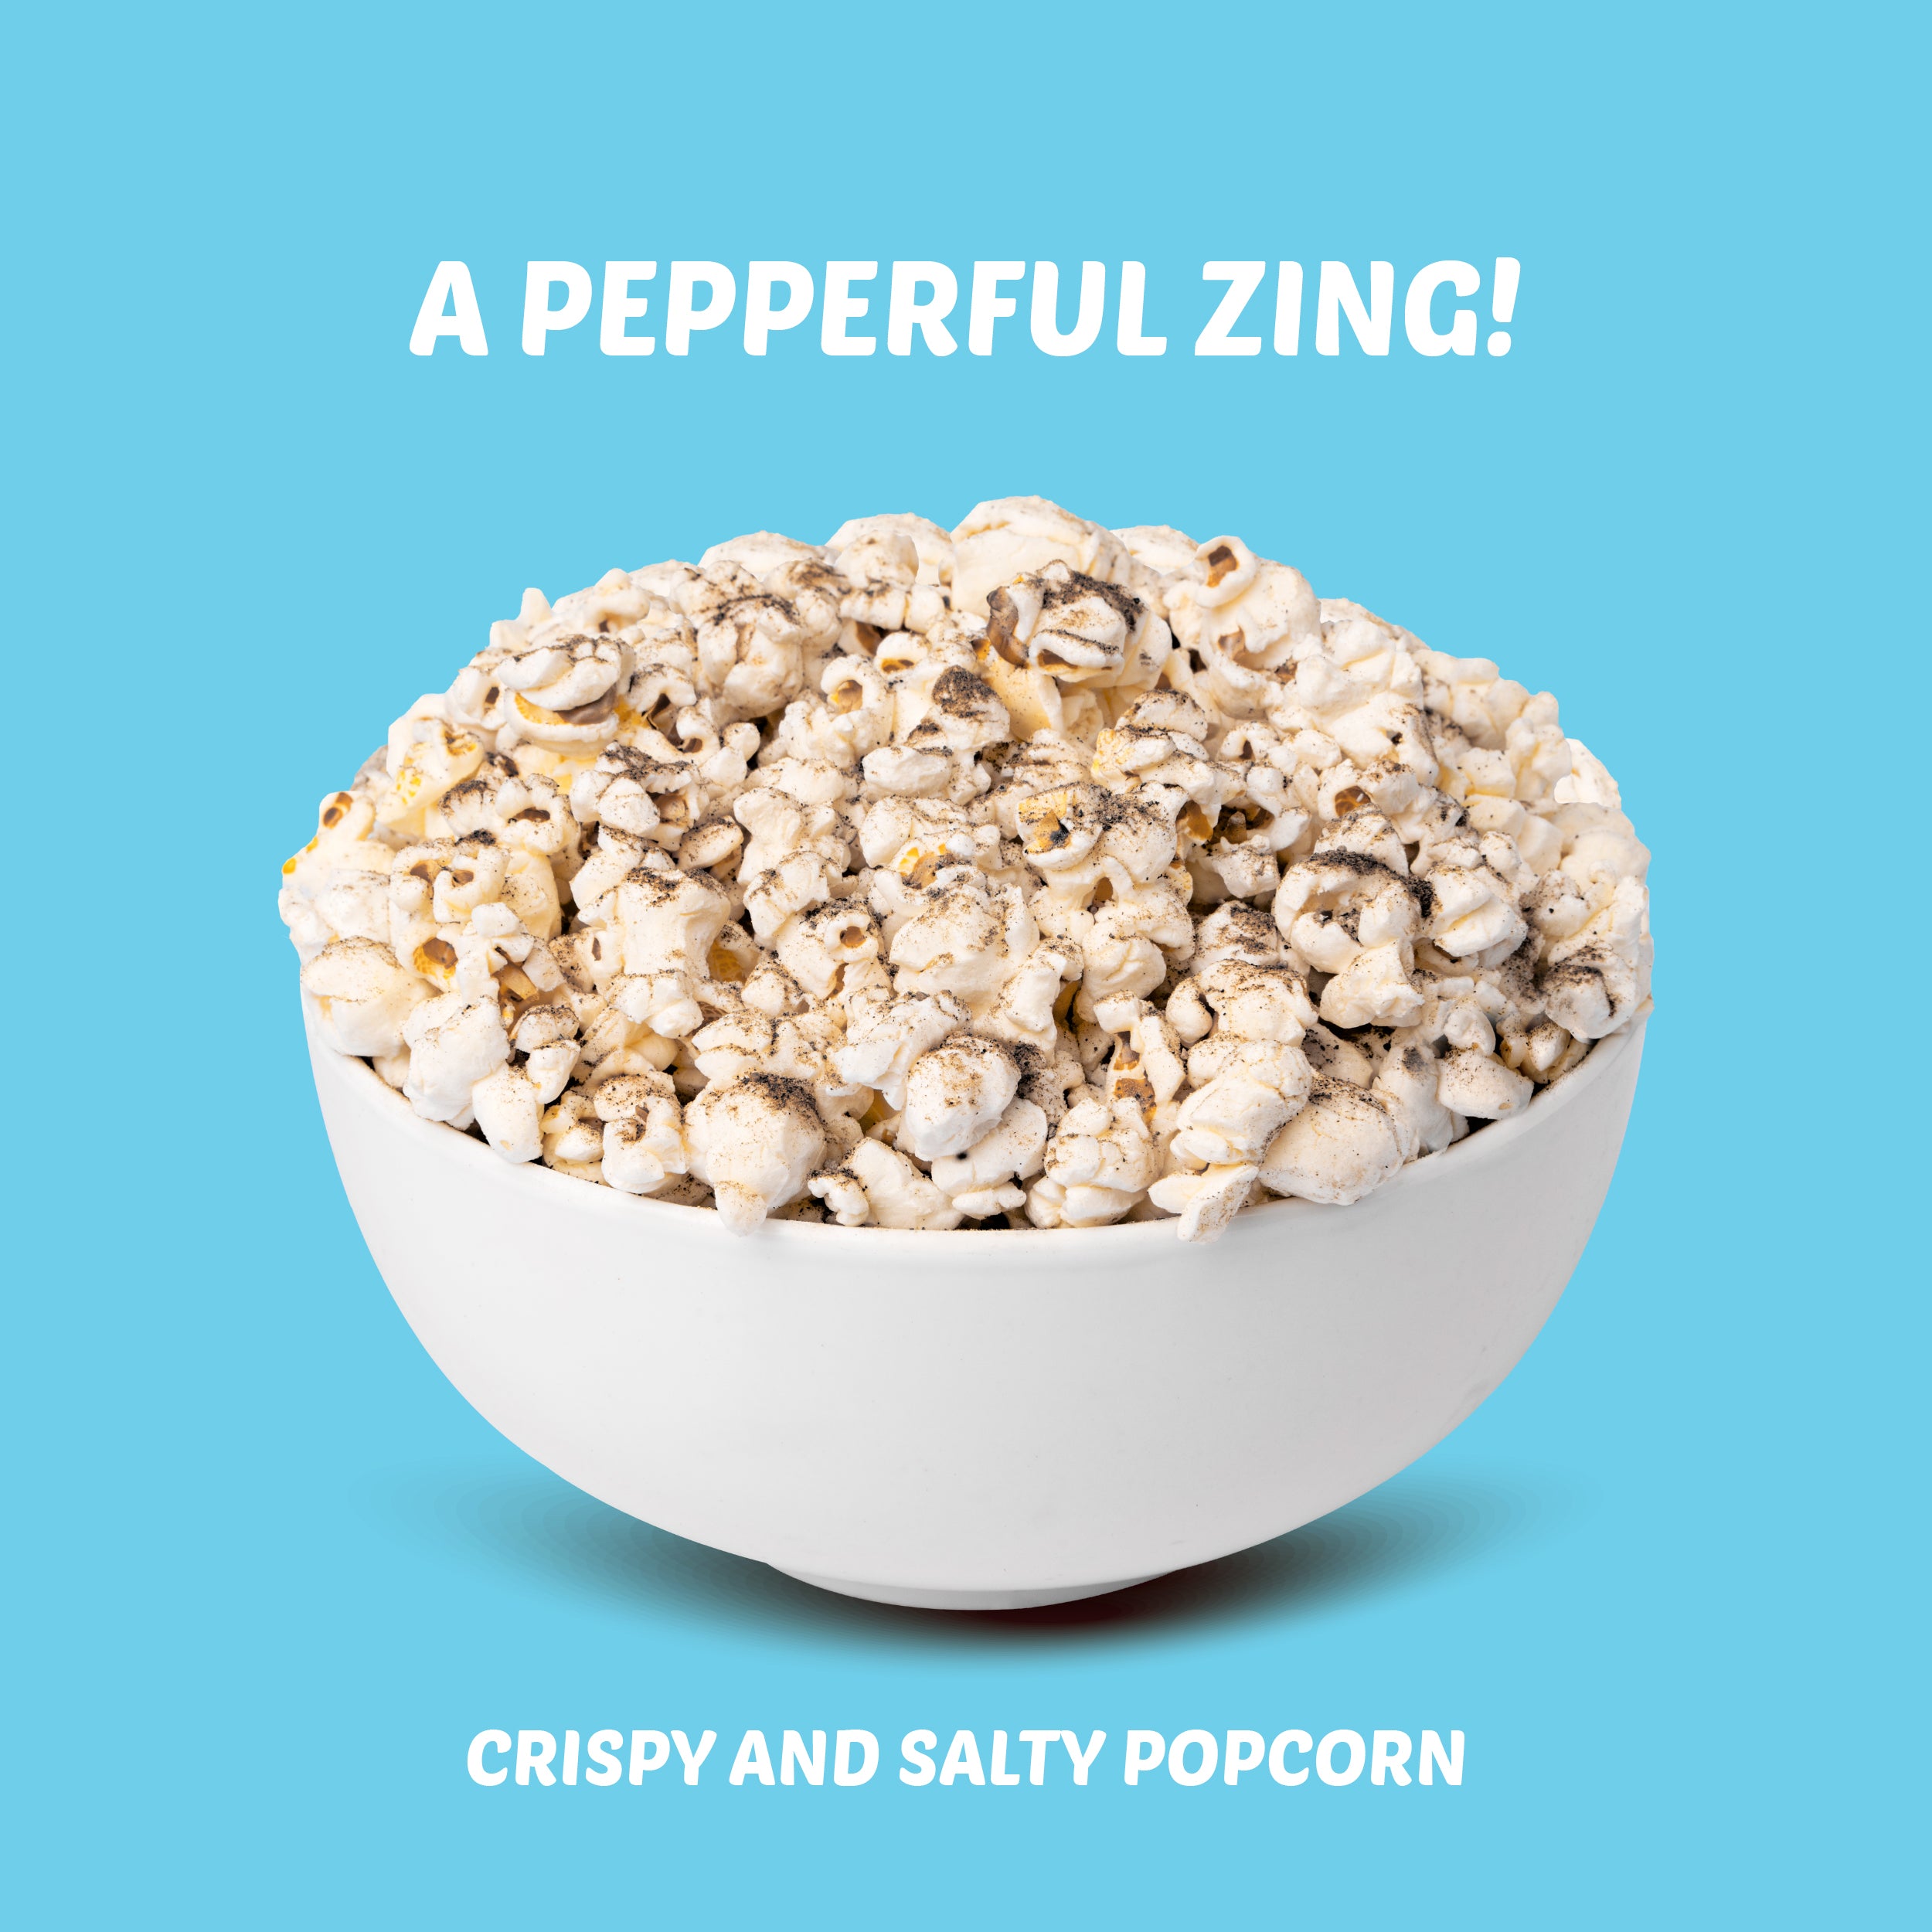 Salt'n Pepper Popcorn Packs